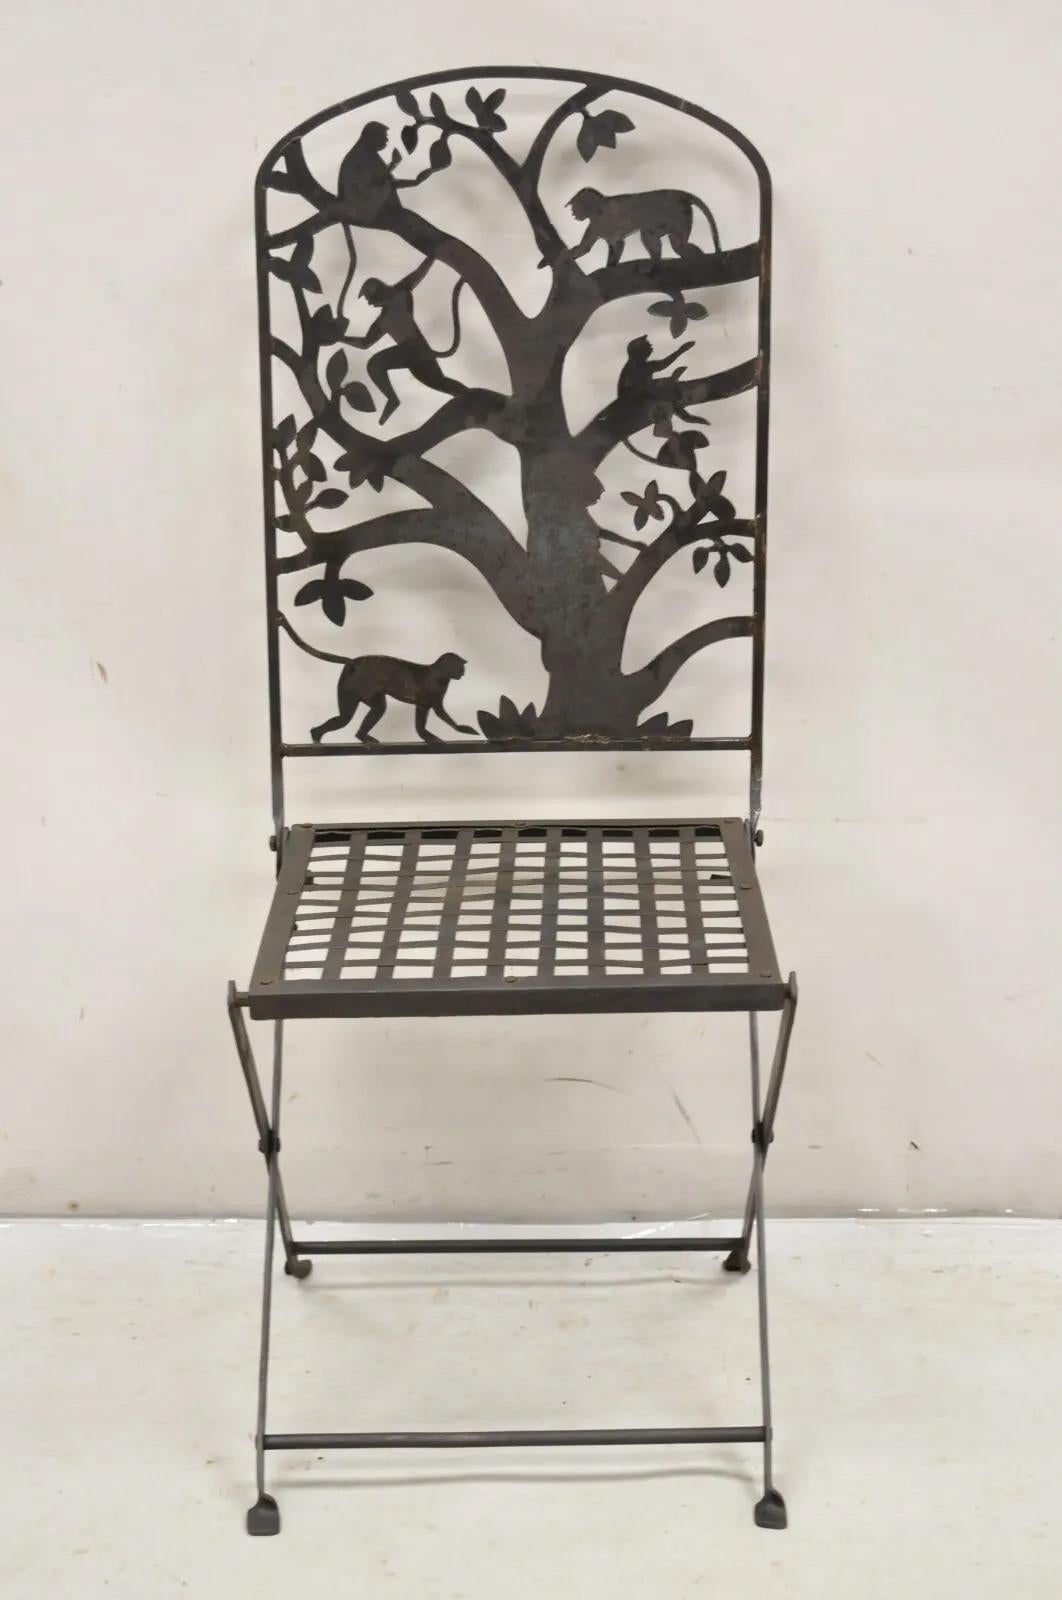 Vintage Wrought Iron Figural Monkeys In Tree Folding Garden Accent Chair. Das Gestell ist faltbar, die Oberfläche verwittert und rustikal, ein einzigartiger Vintage-Stuhl. CIRCA  Mitte bis Ende des 20. Jahrhunderts. Abmessungen: 42